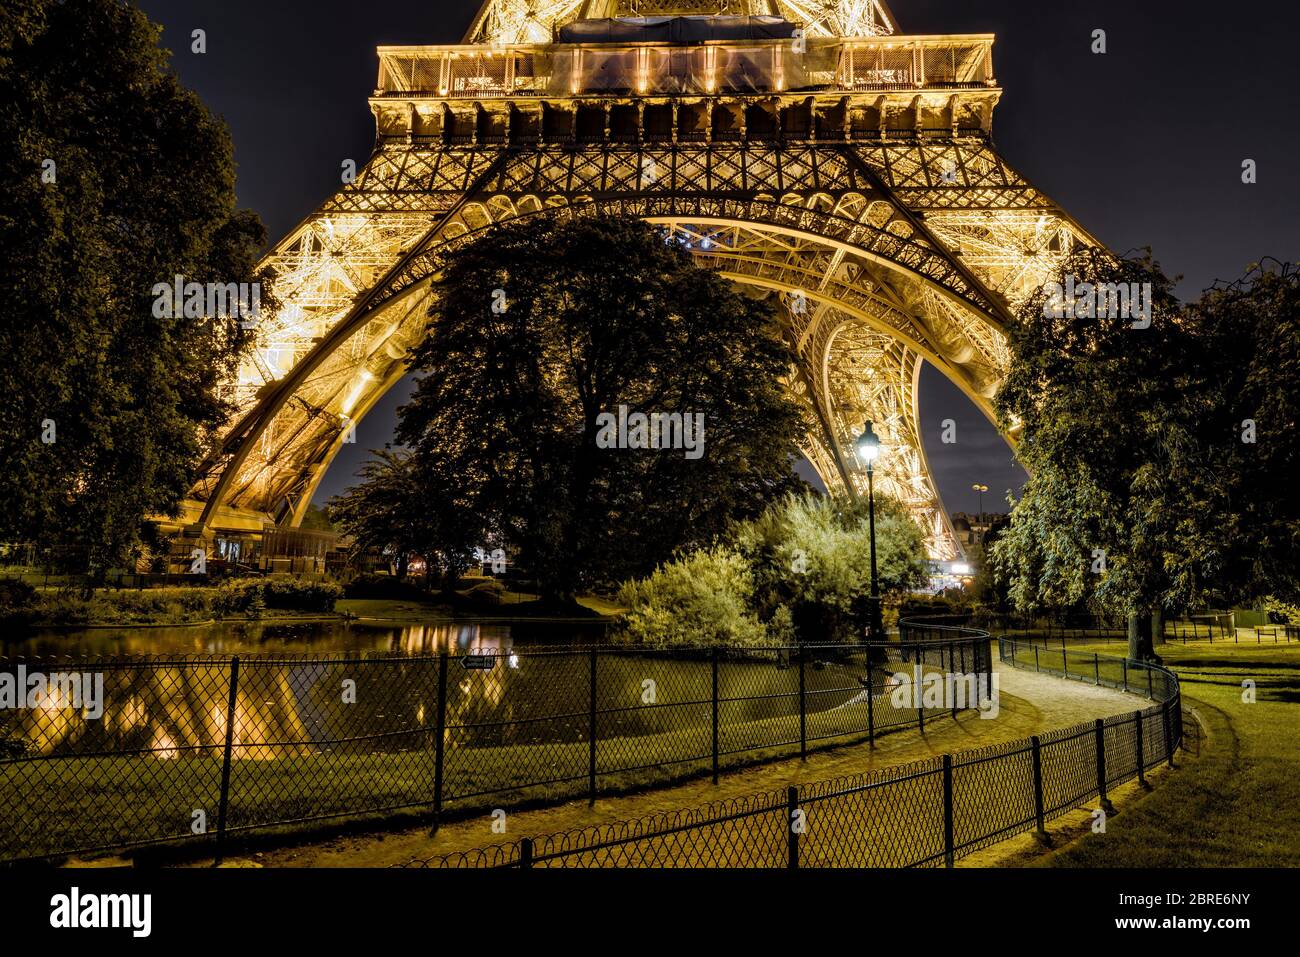 Parigi - 24 SETTEMBRE 2013: Illuminazione della Torre Eiffel di notte. La Torre Eiffel è una delle principali attrazioni turistiche della Francia. Foto Stock